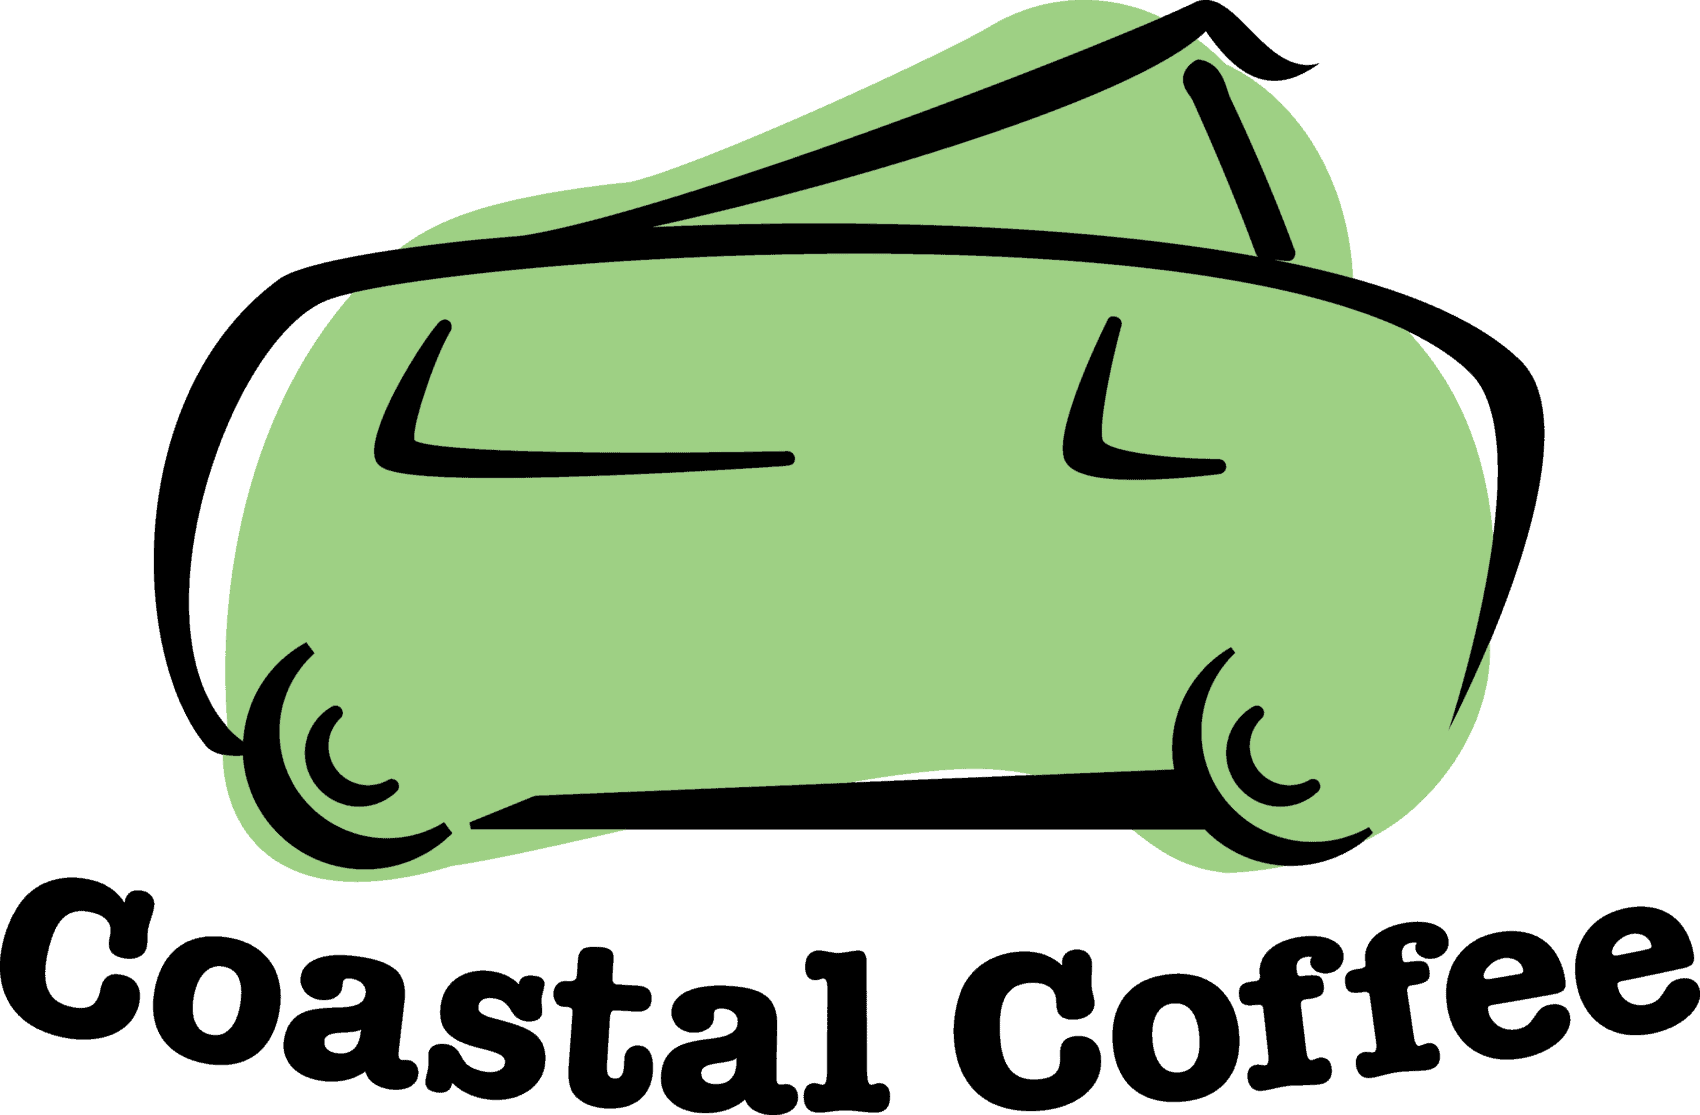 Coastal Coffee Company LOGO Hippy Van